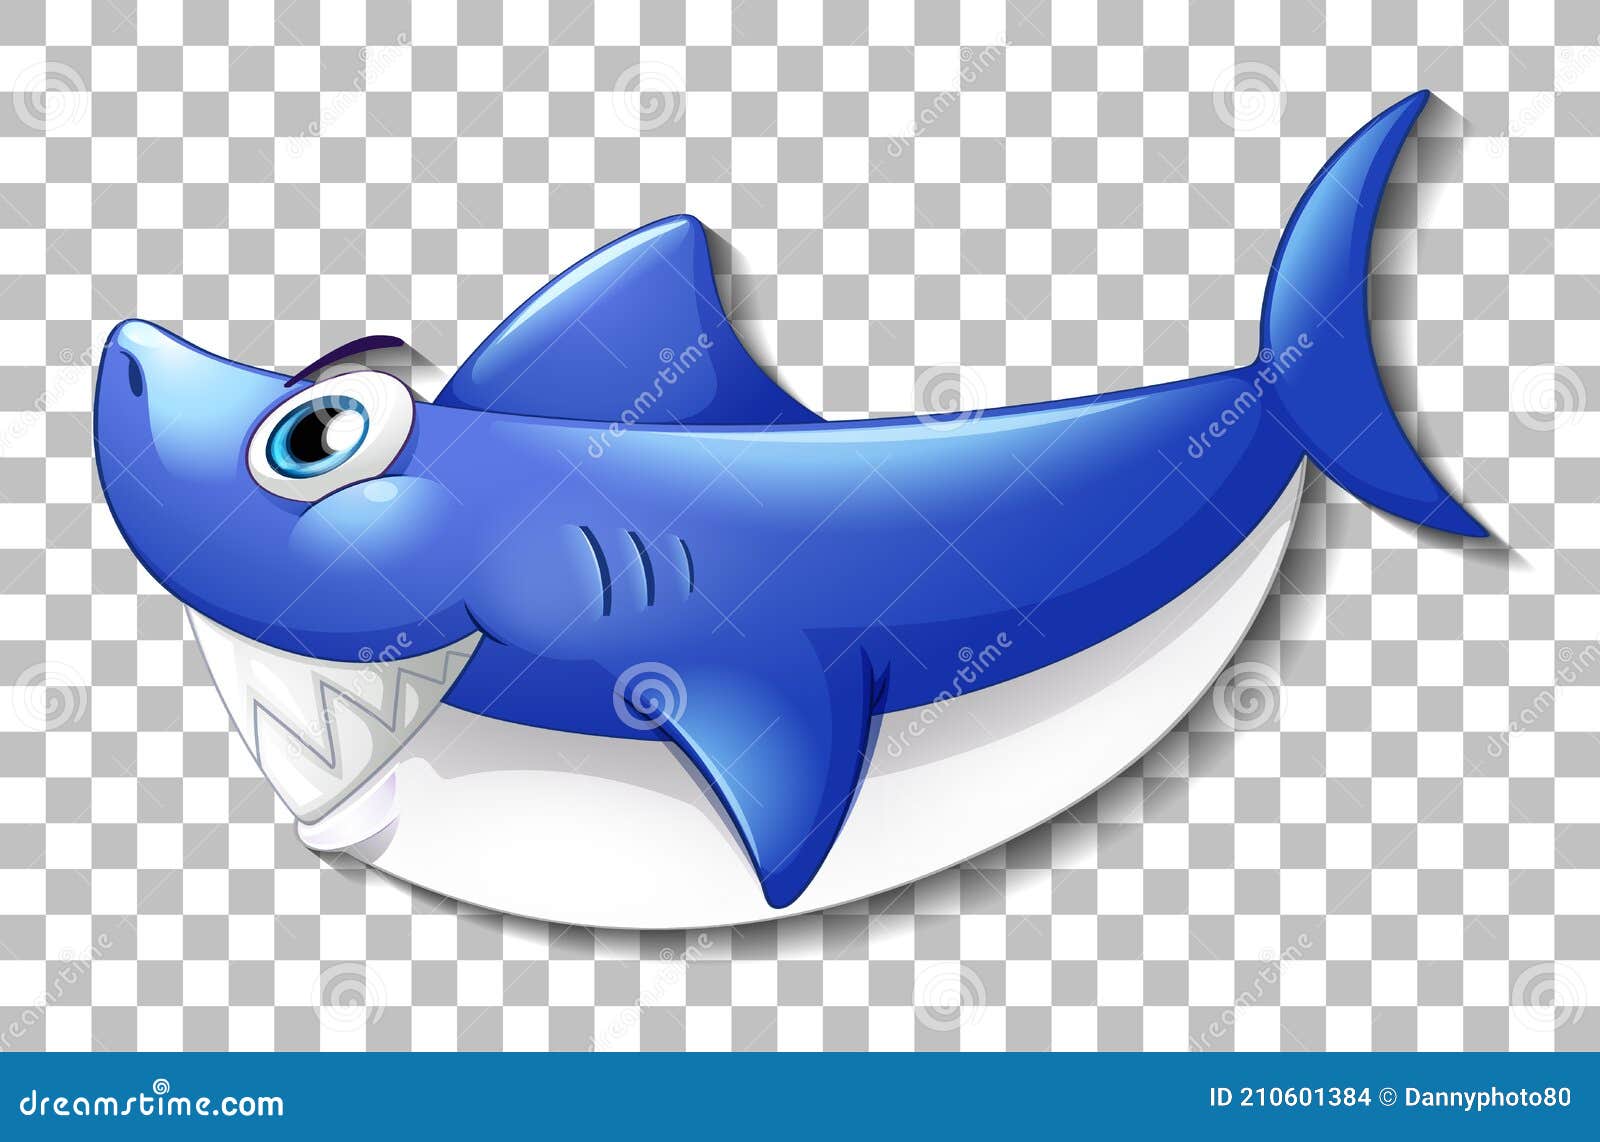 可爱的卡通鲨鱼宝宝插画图片素材_ID:317305604-Veer图库